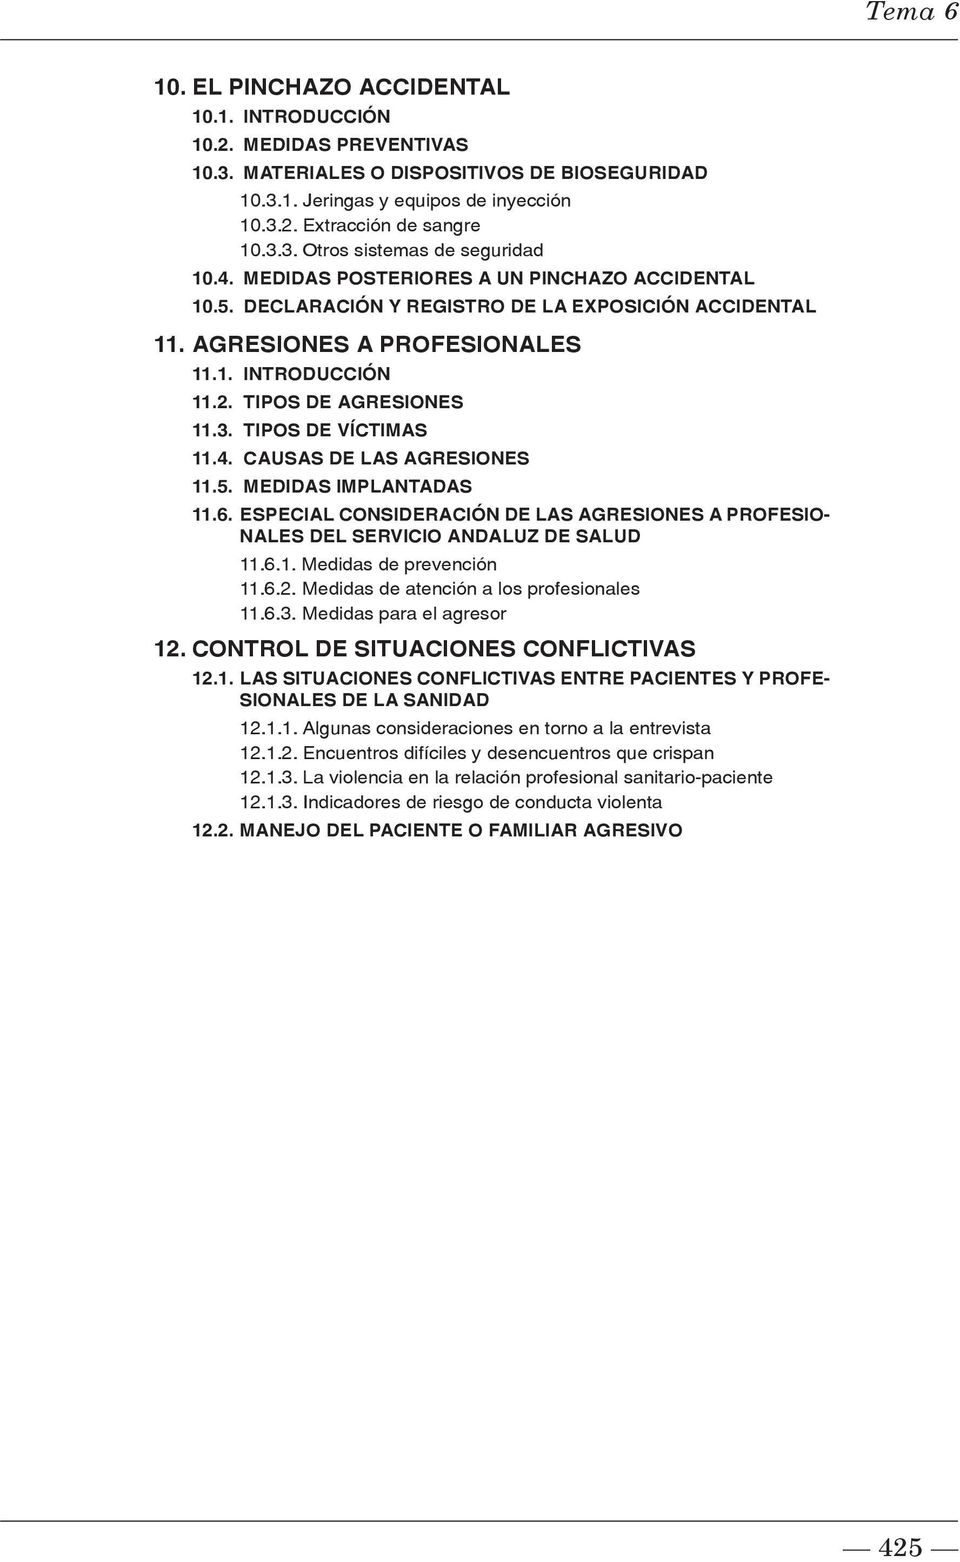 TIPOS DE AGRESIONES 11.3. TIPOS DE VÍCTIMAS 11.4. CAUSAS DE LAS AGRESIONES 11.5. MEDIDAS IMPLANTADAS 11.6. ESPECIAL CONSIDERACIÓN DE LAS AGRESIONES A PROFESIO- NALES DEL SERVICIO ANDALUZ DE SALUD 11.